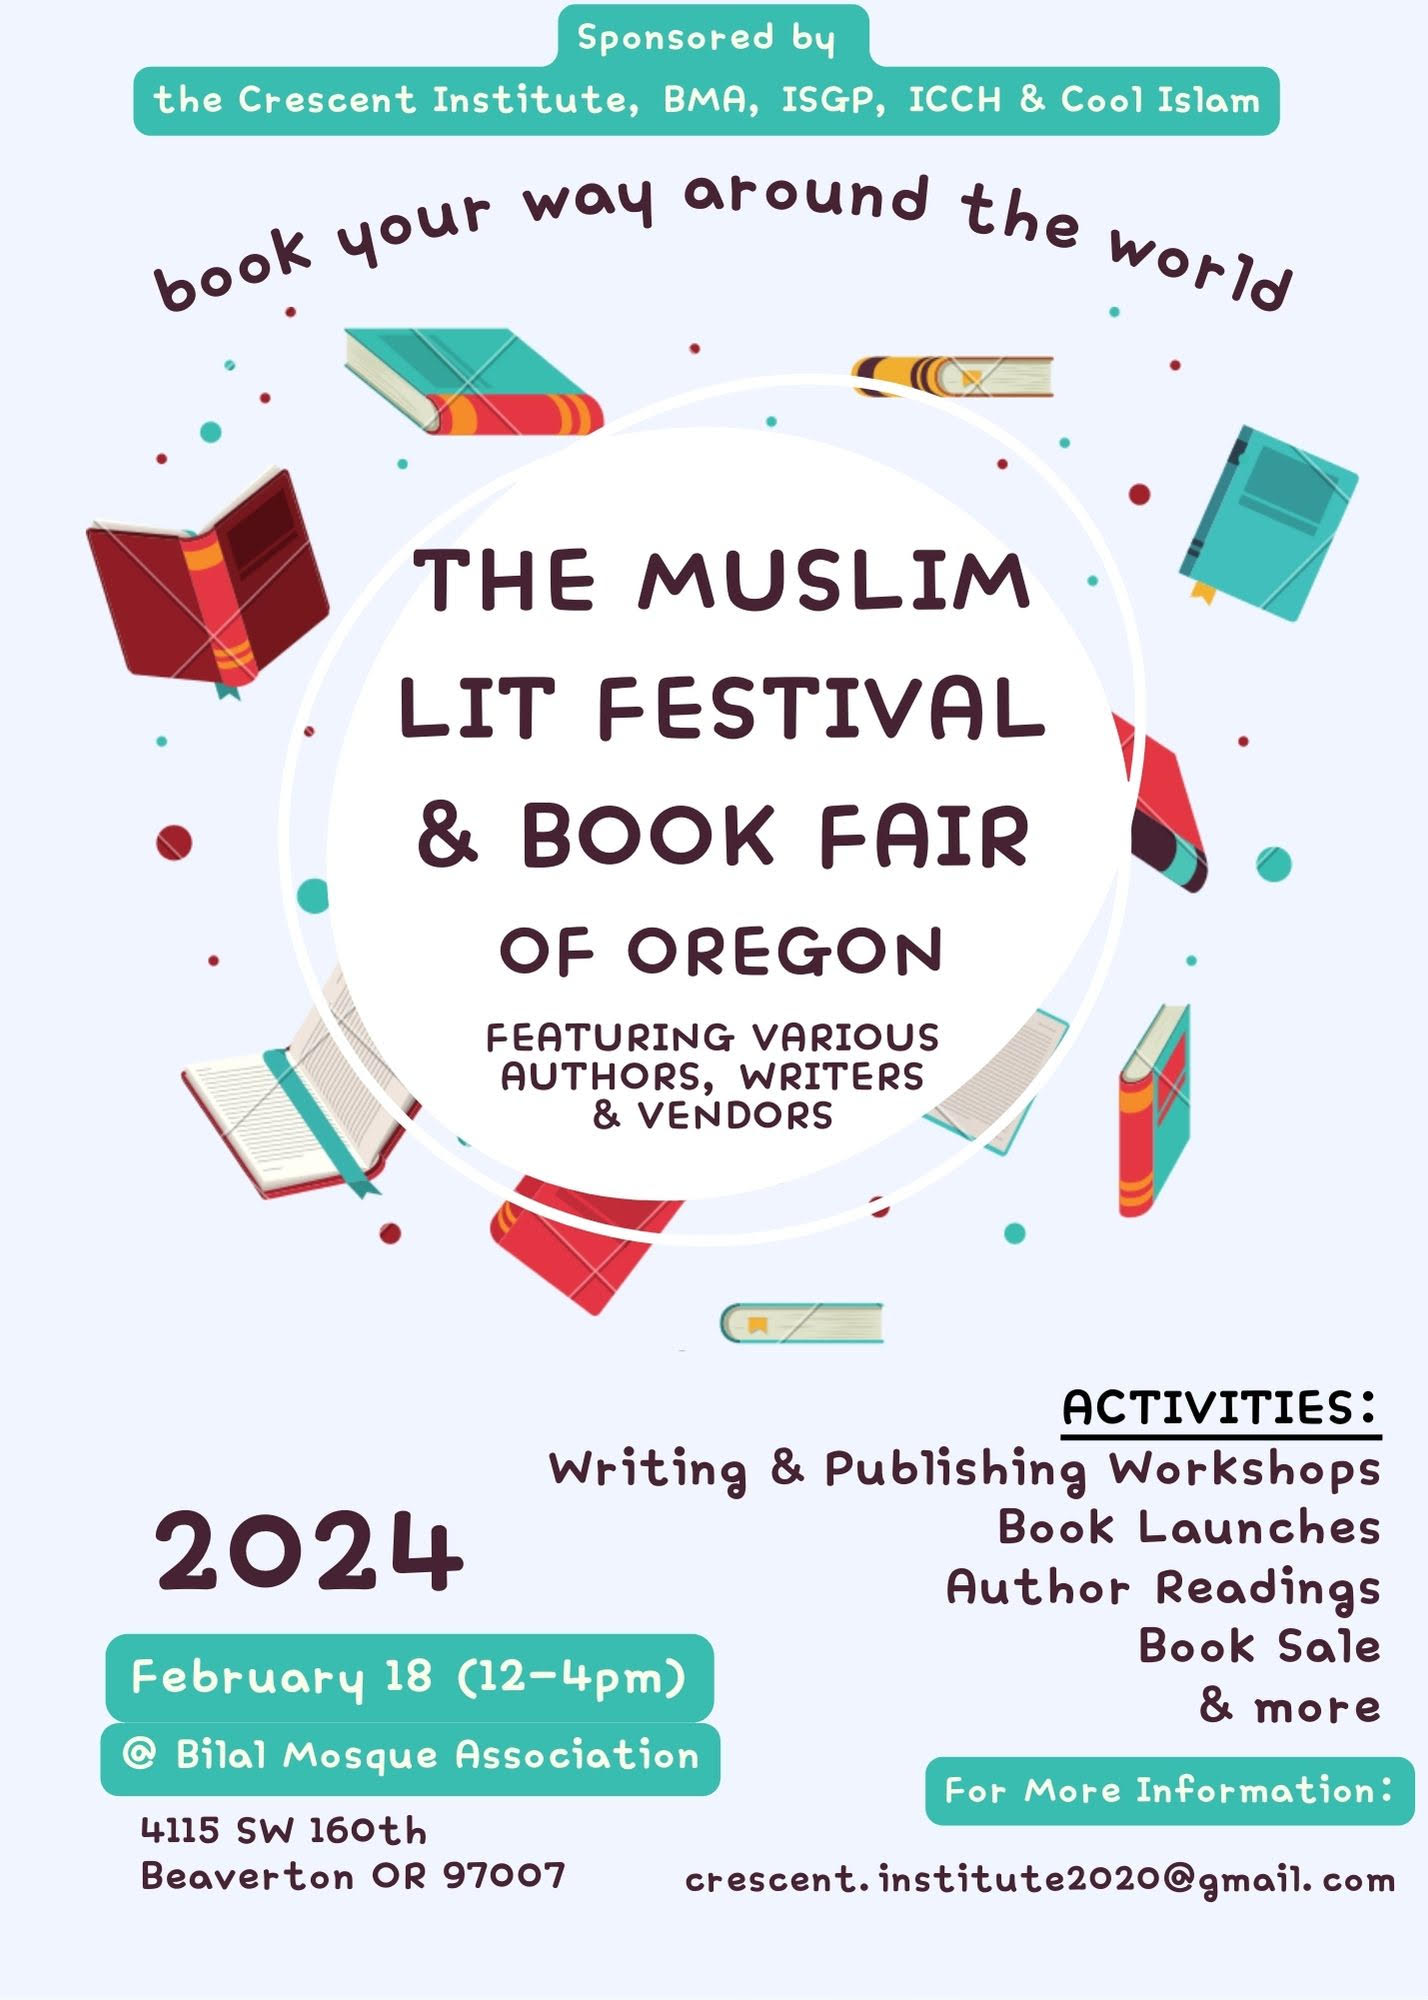 The Muslim Lit Festival & Book Fair